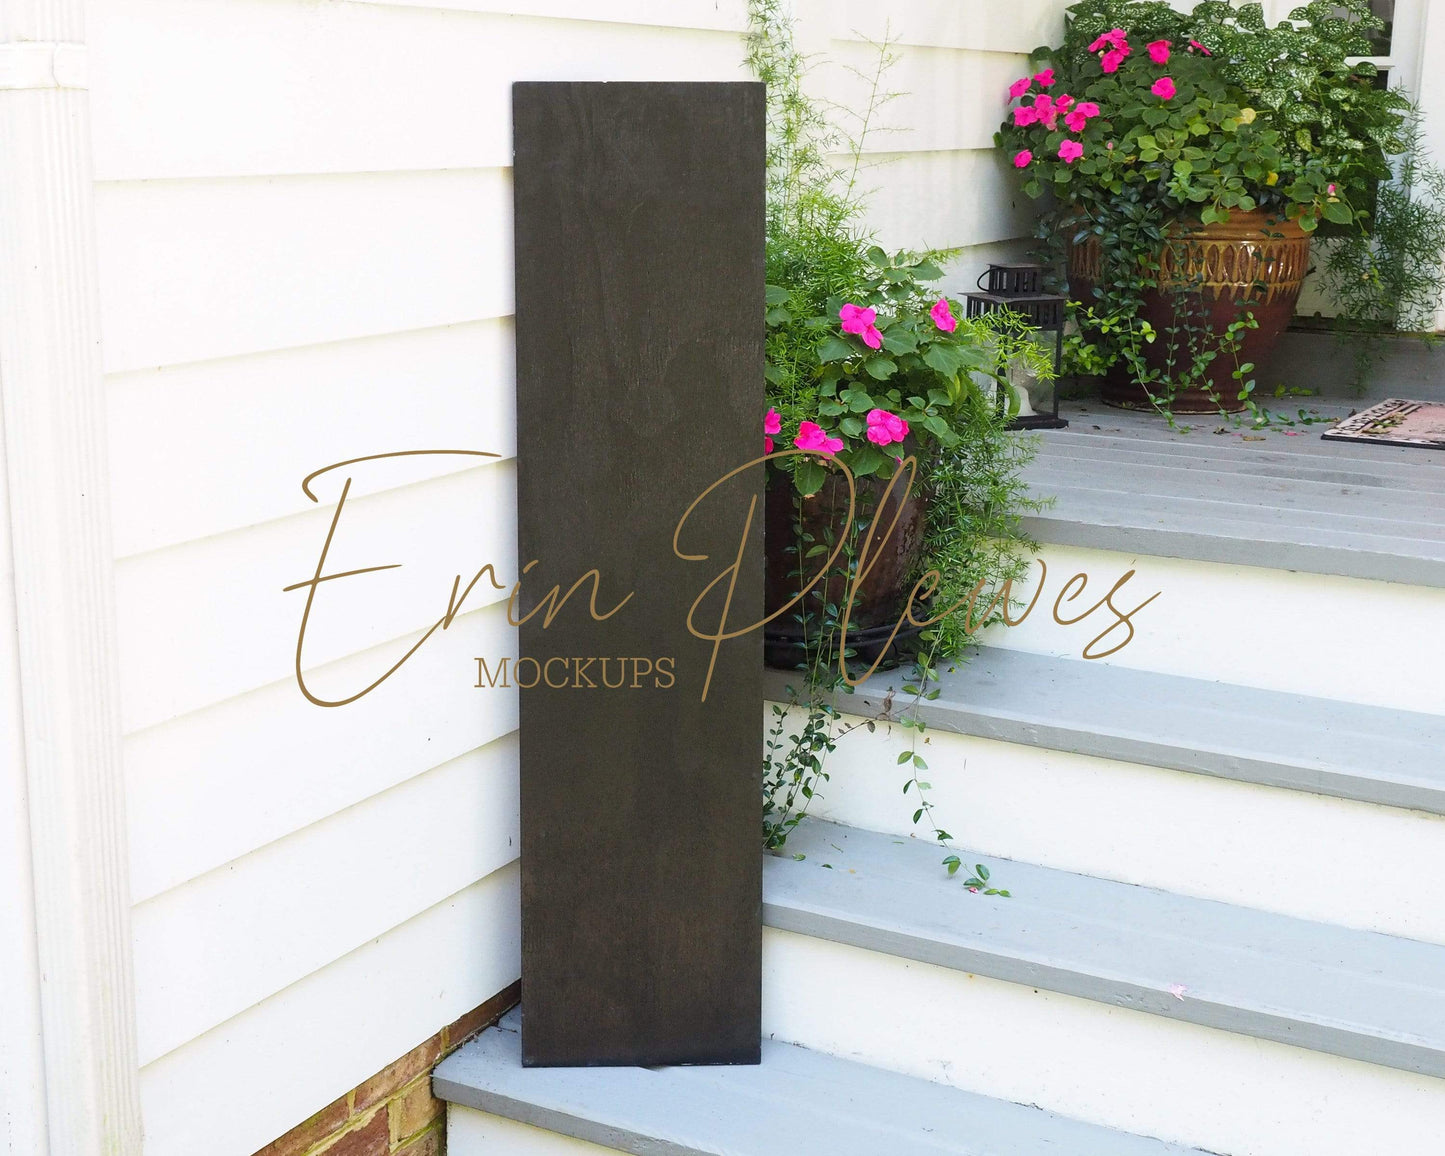 Erin Plewes Mockups Mockup Porch Sign Mockup, Large Black Wood Sign Mock Up 1' x 4', Rustic Black Wood Frame Mock Up 12" x 48", Farmhouse Style Mock Up Template